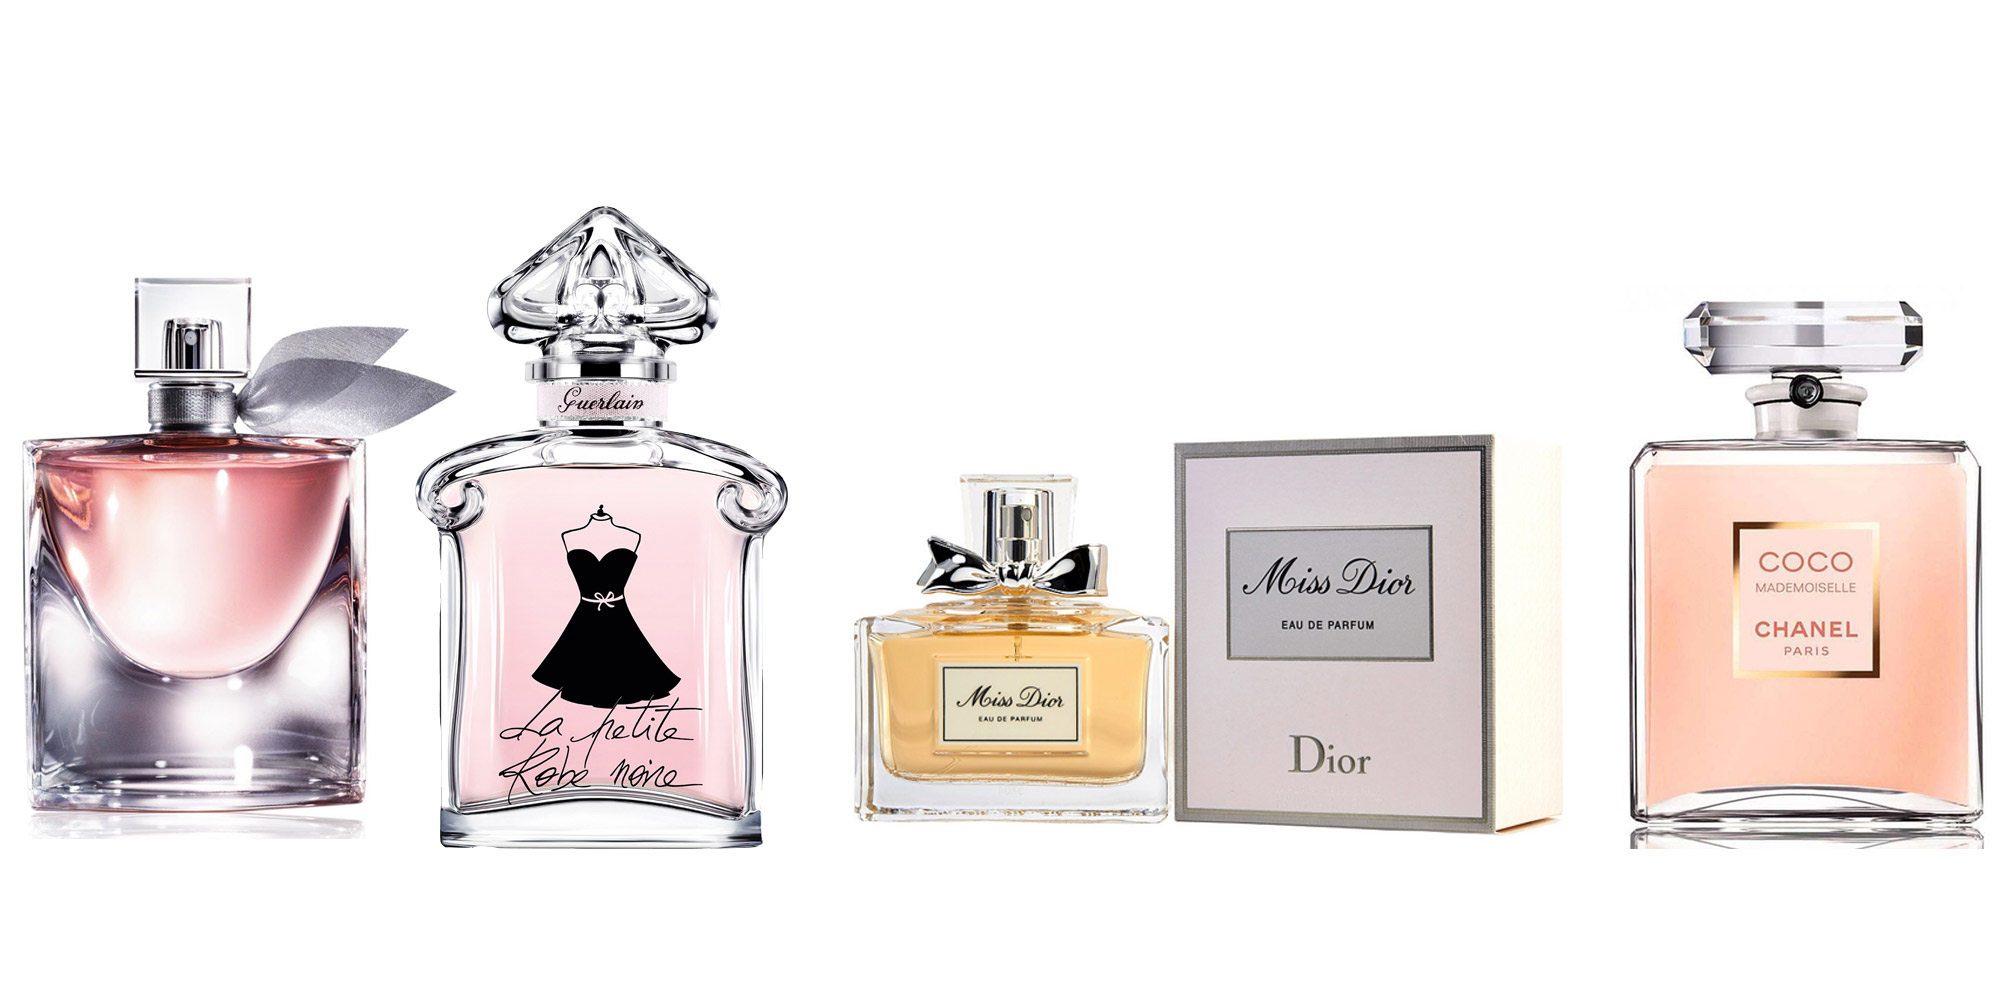 Quel est le parfum pour femme le plus vendu en France ?